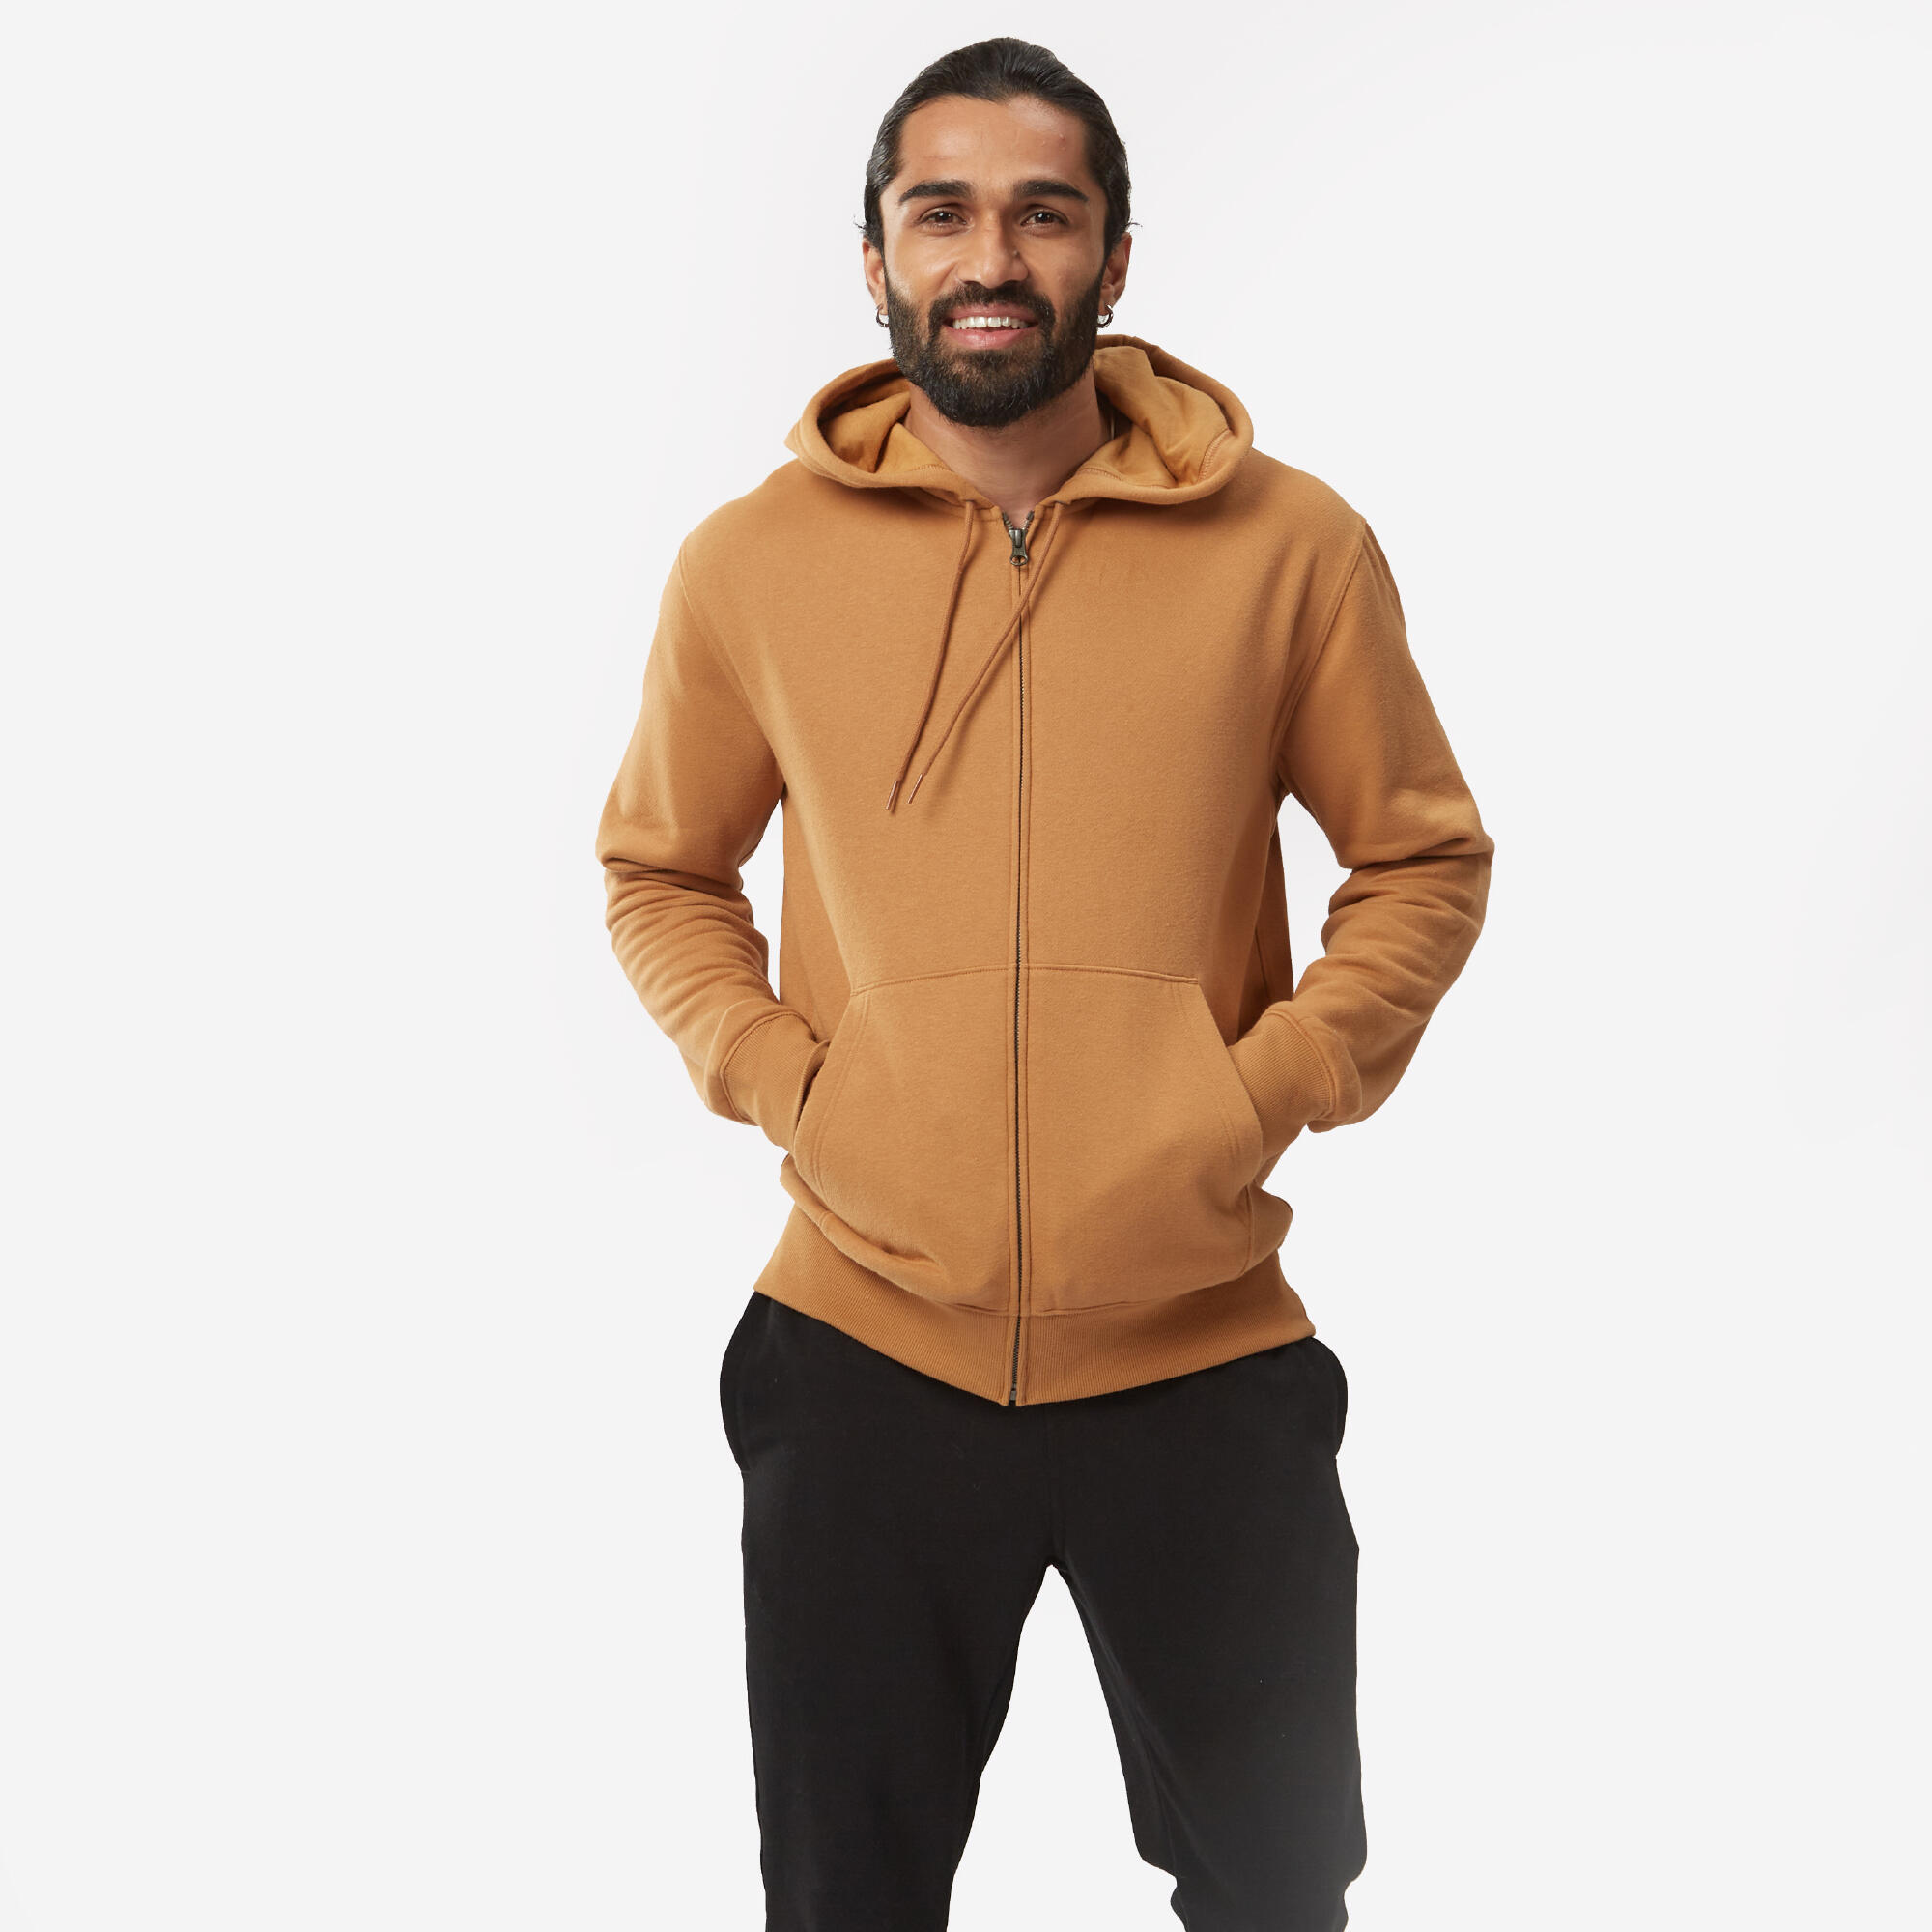 Men's Thermal-Lined Full-Zip Hooded Sweatshirt